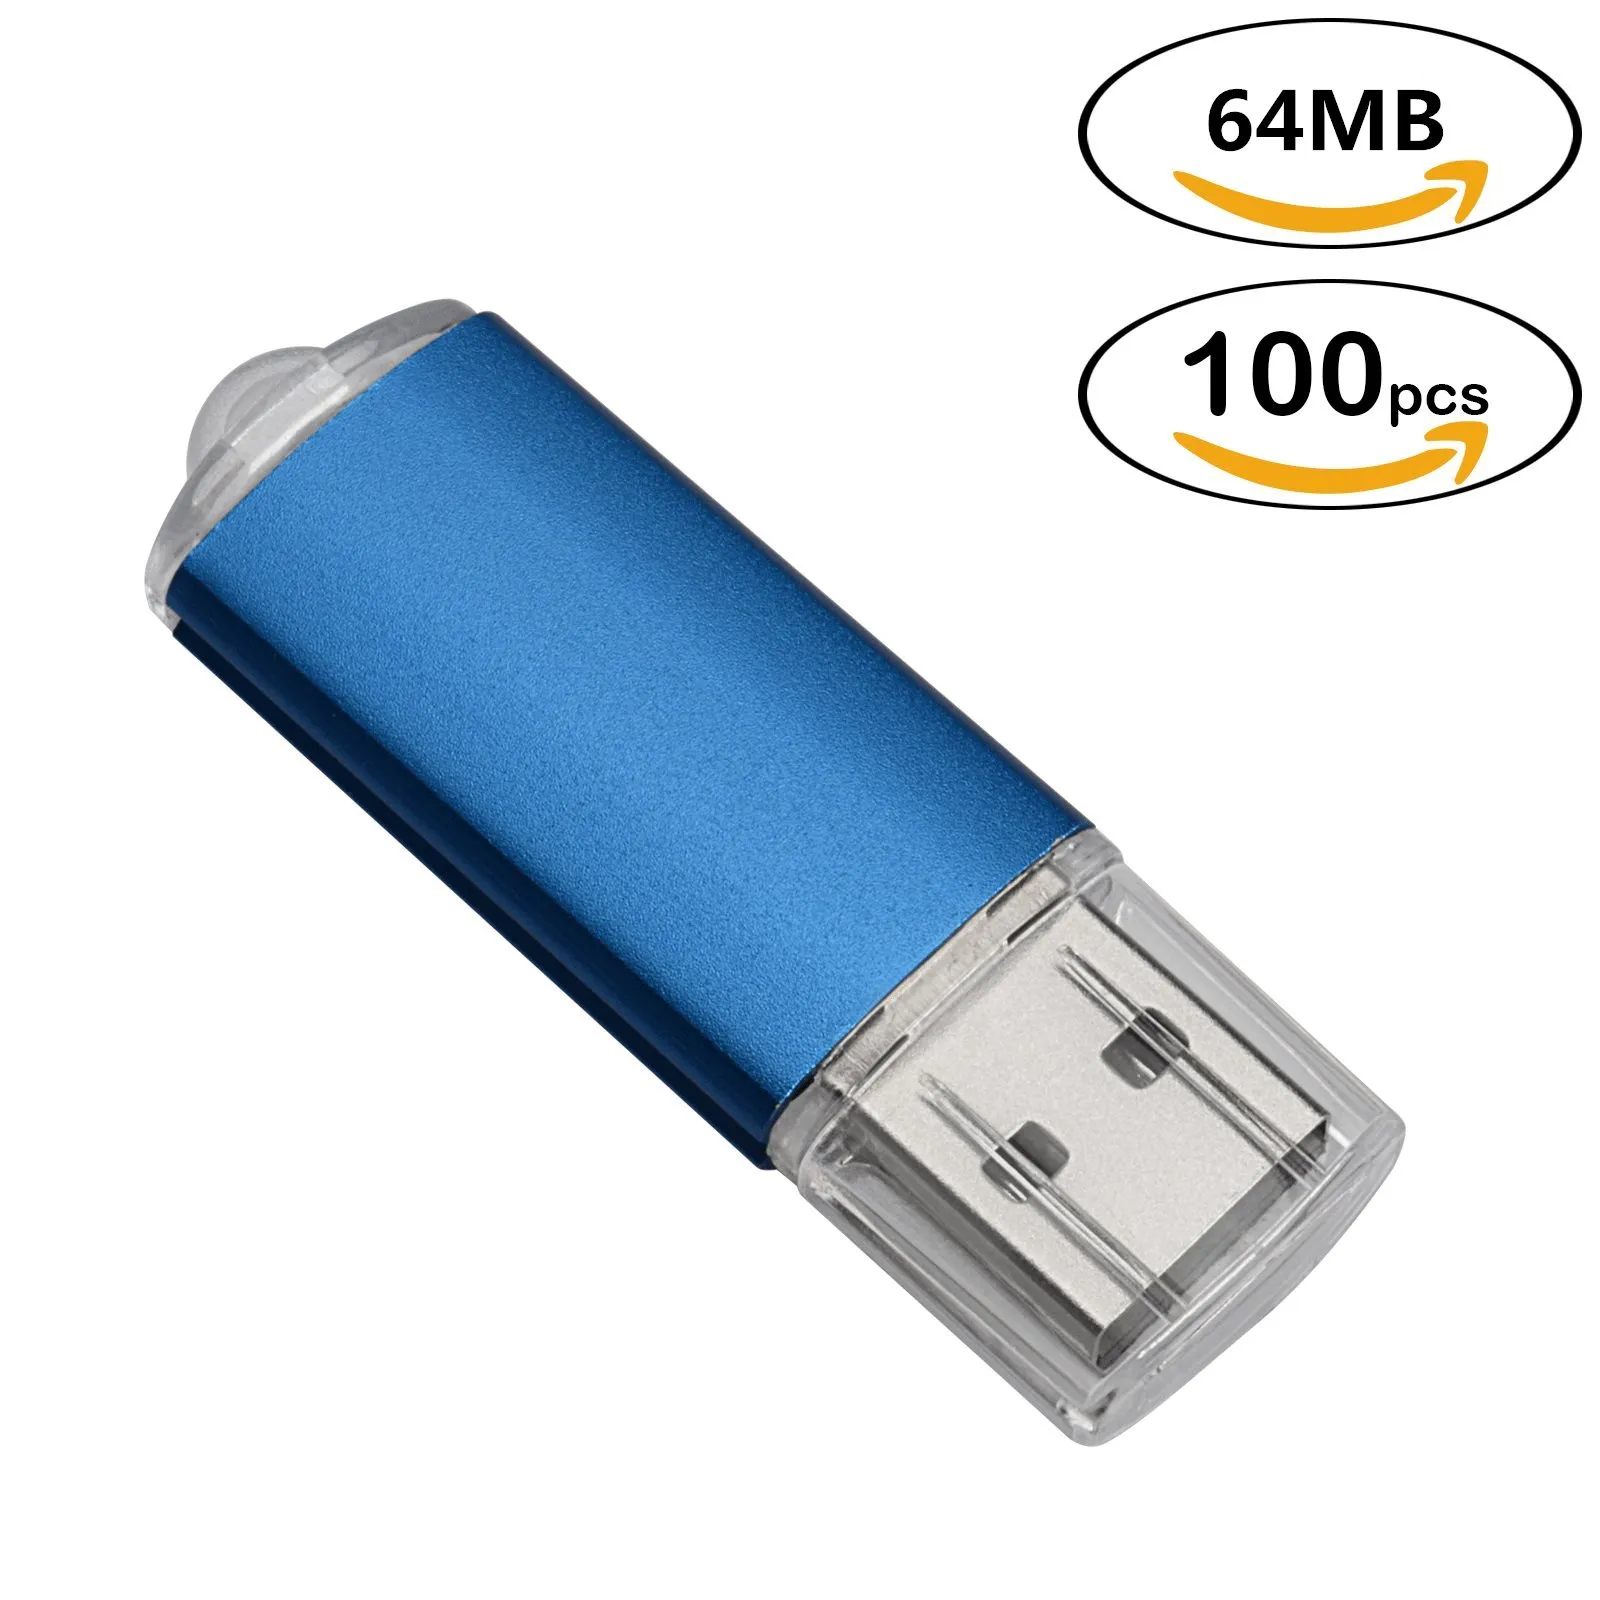 블루 벌크 100pcs 사각형 USB 2.0 플래시 드라이브 64MB 플래시 펜 드라이브 컴퓨터 노트북 태블릿에 대 한 높은 속도 64MB 엄지 손가락 메모리 스틱 스토리지